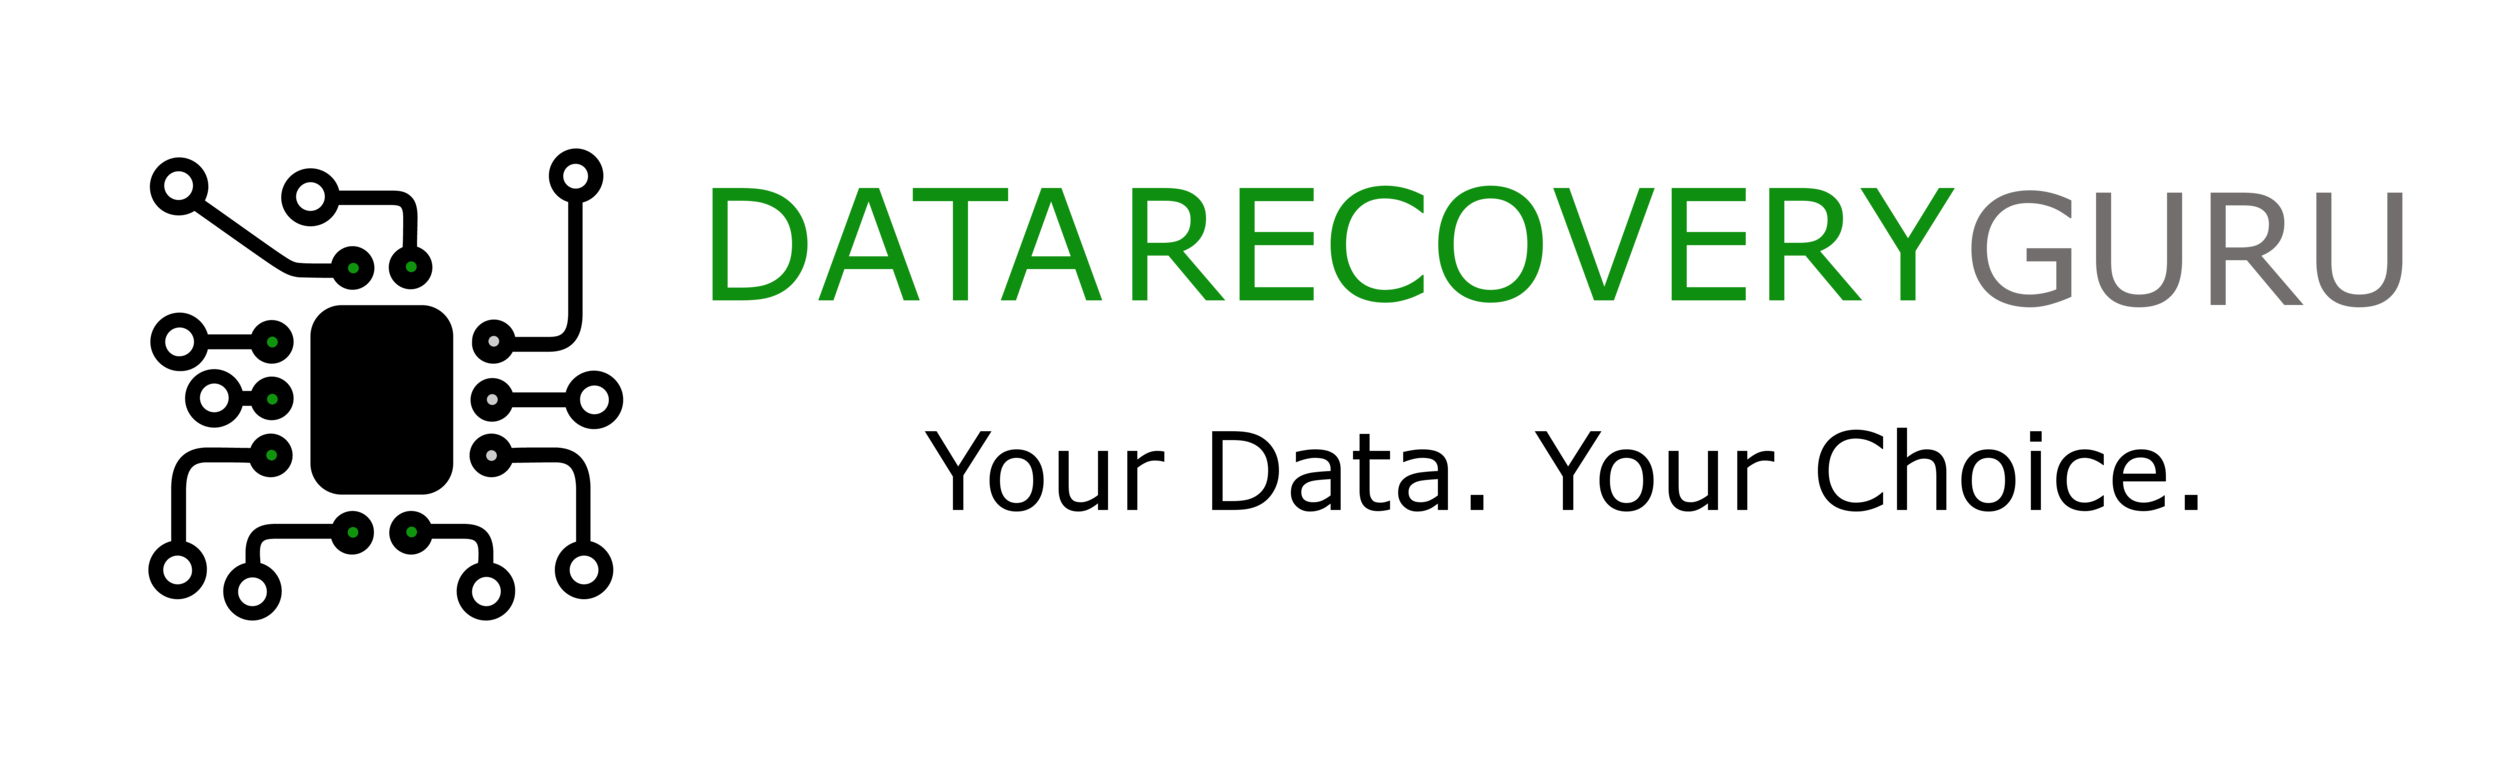 Data Recovery Guru Service Company in Boston MA